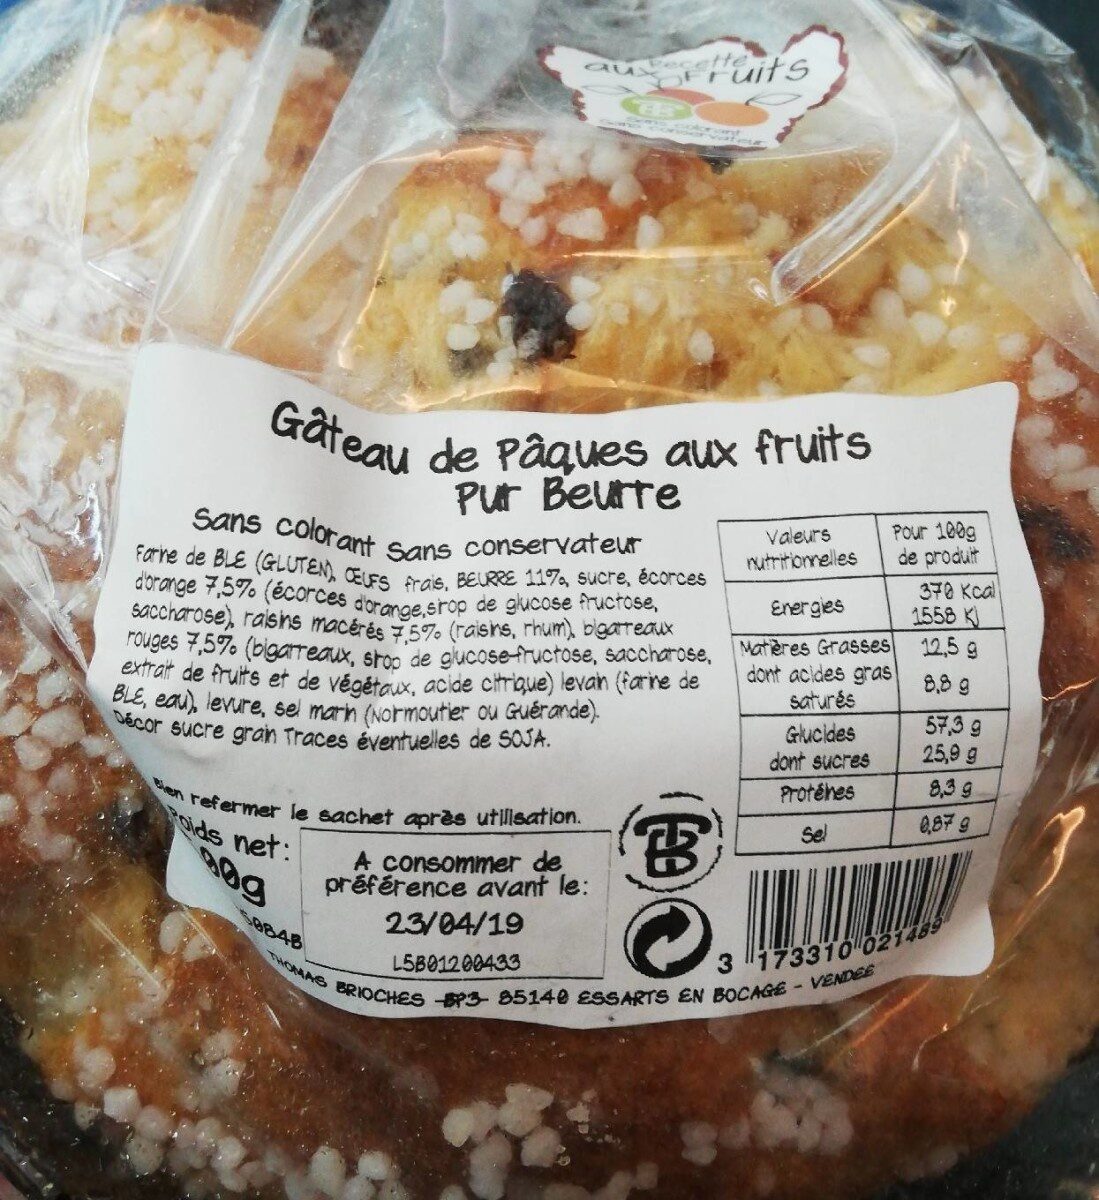 Gâteau de pâques aux fruits pur beurre - Product - fr